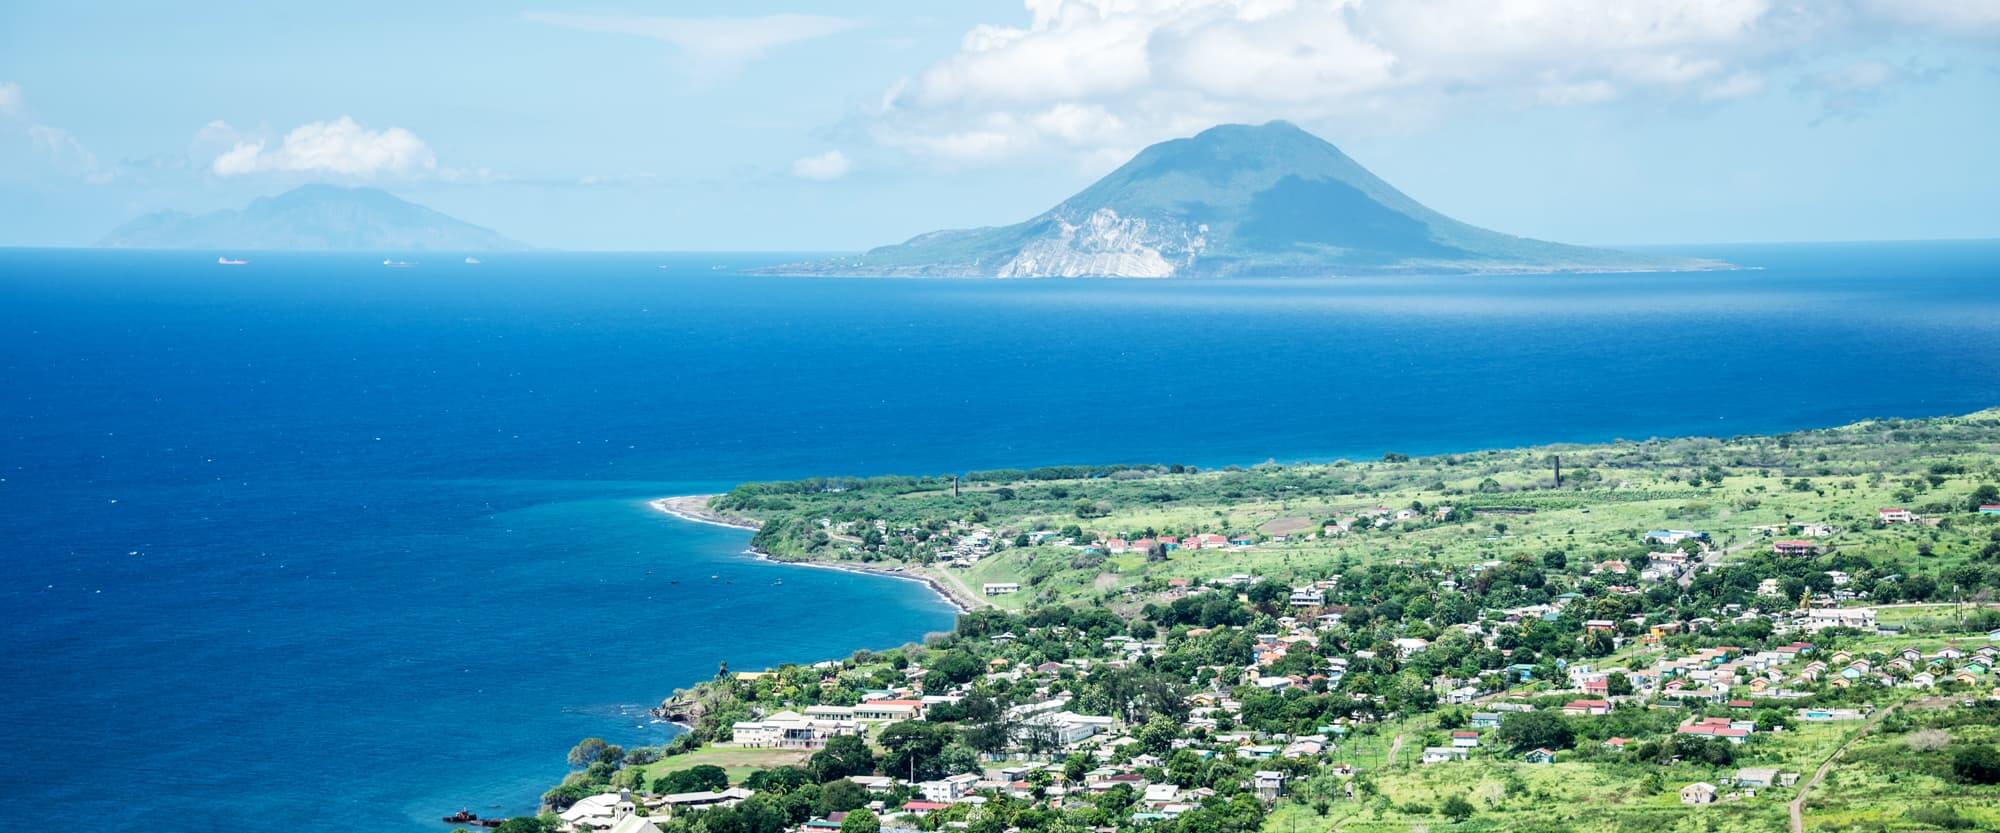 Saint Kitts và Nevis là một liên bang đảo có nền kinh tế du lịch phát triển